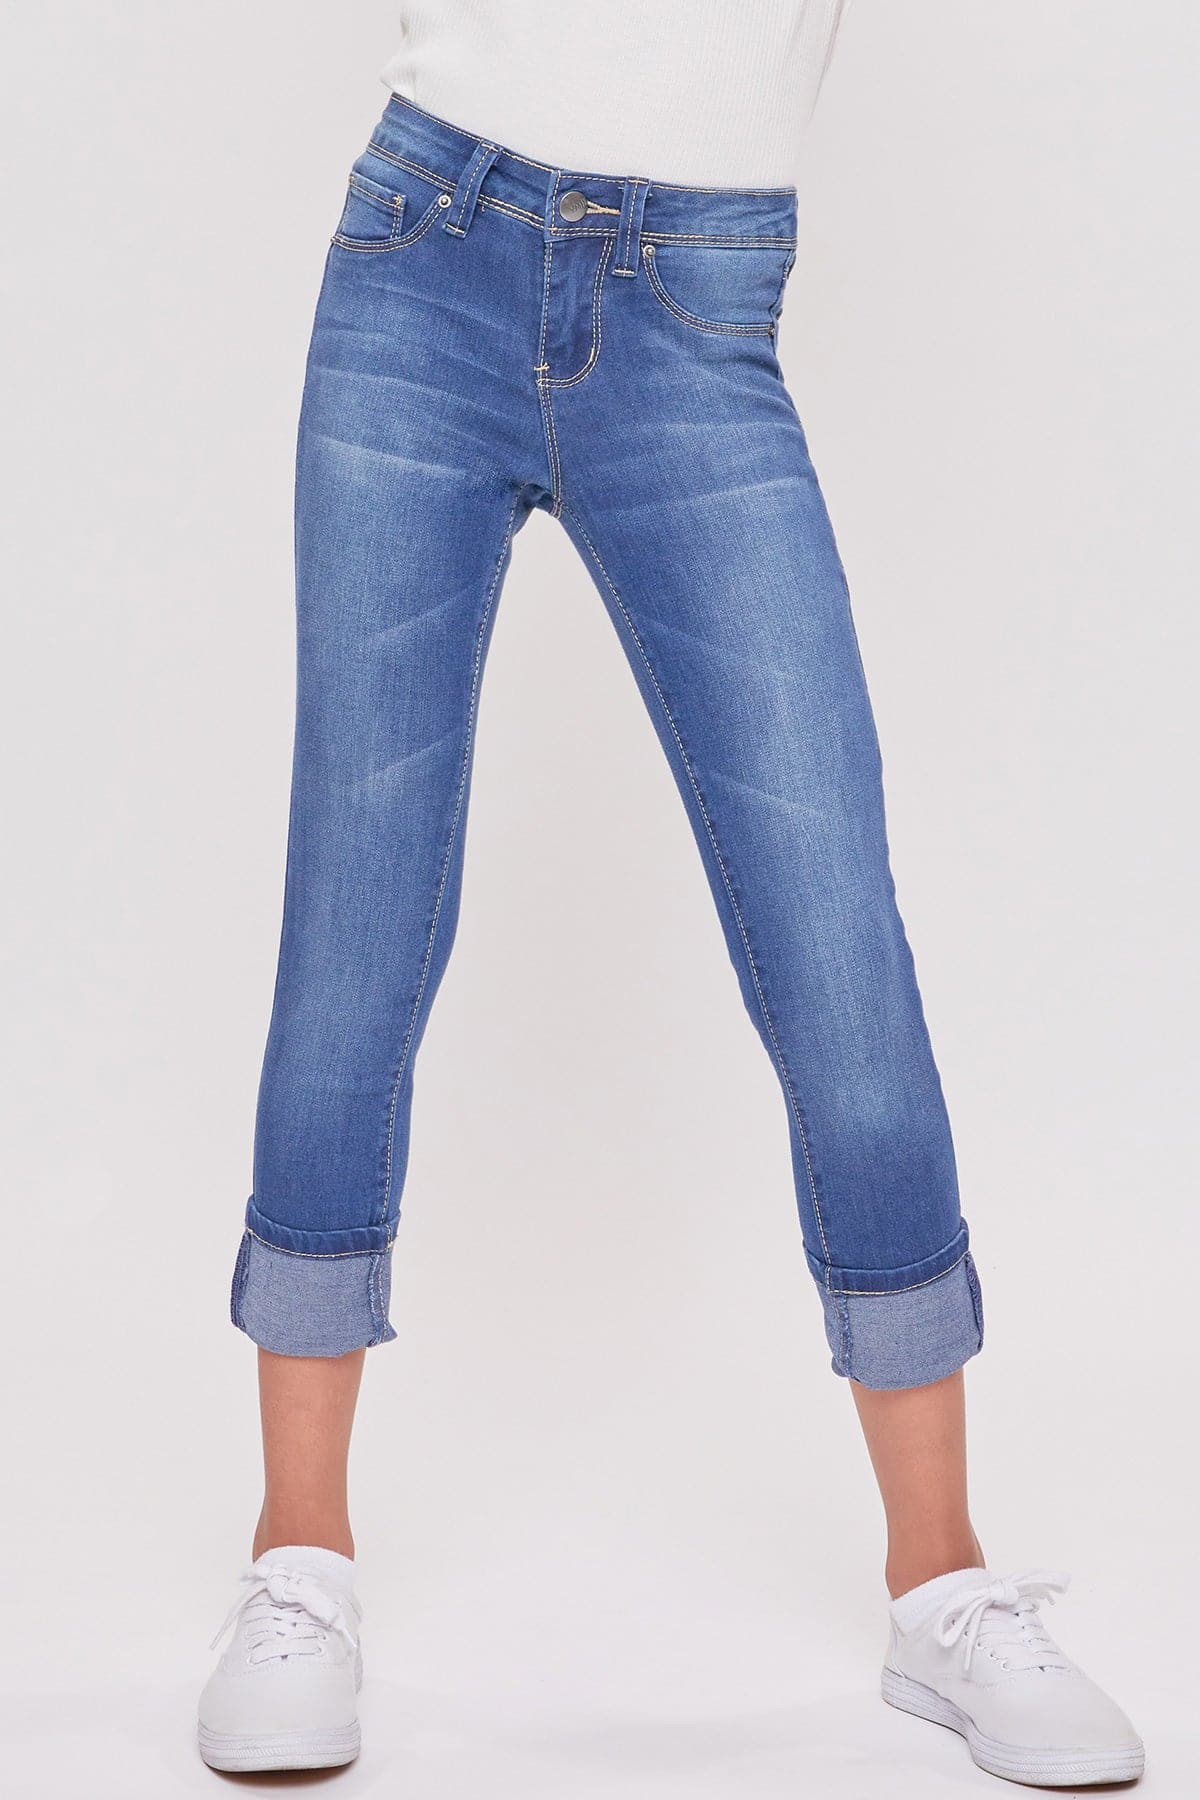 Girls Wide Cuff Denim Skinny Jeans